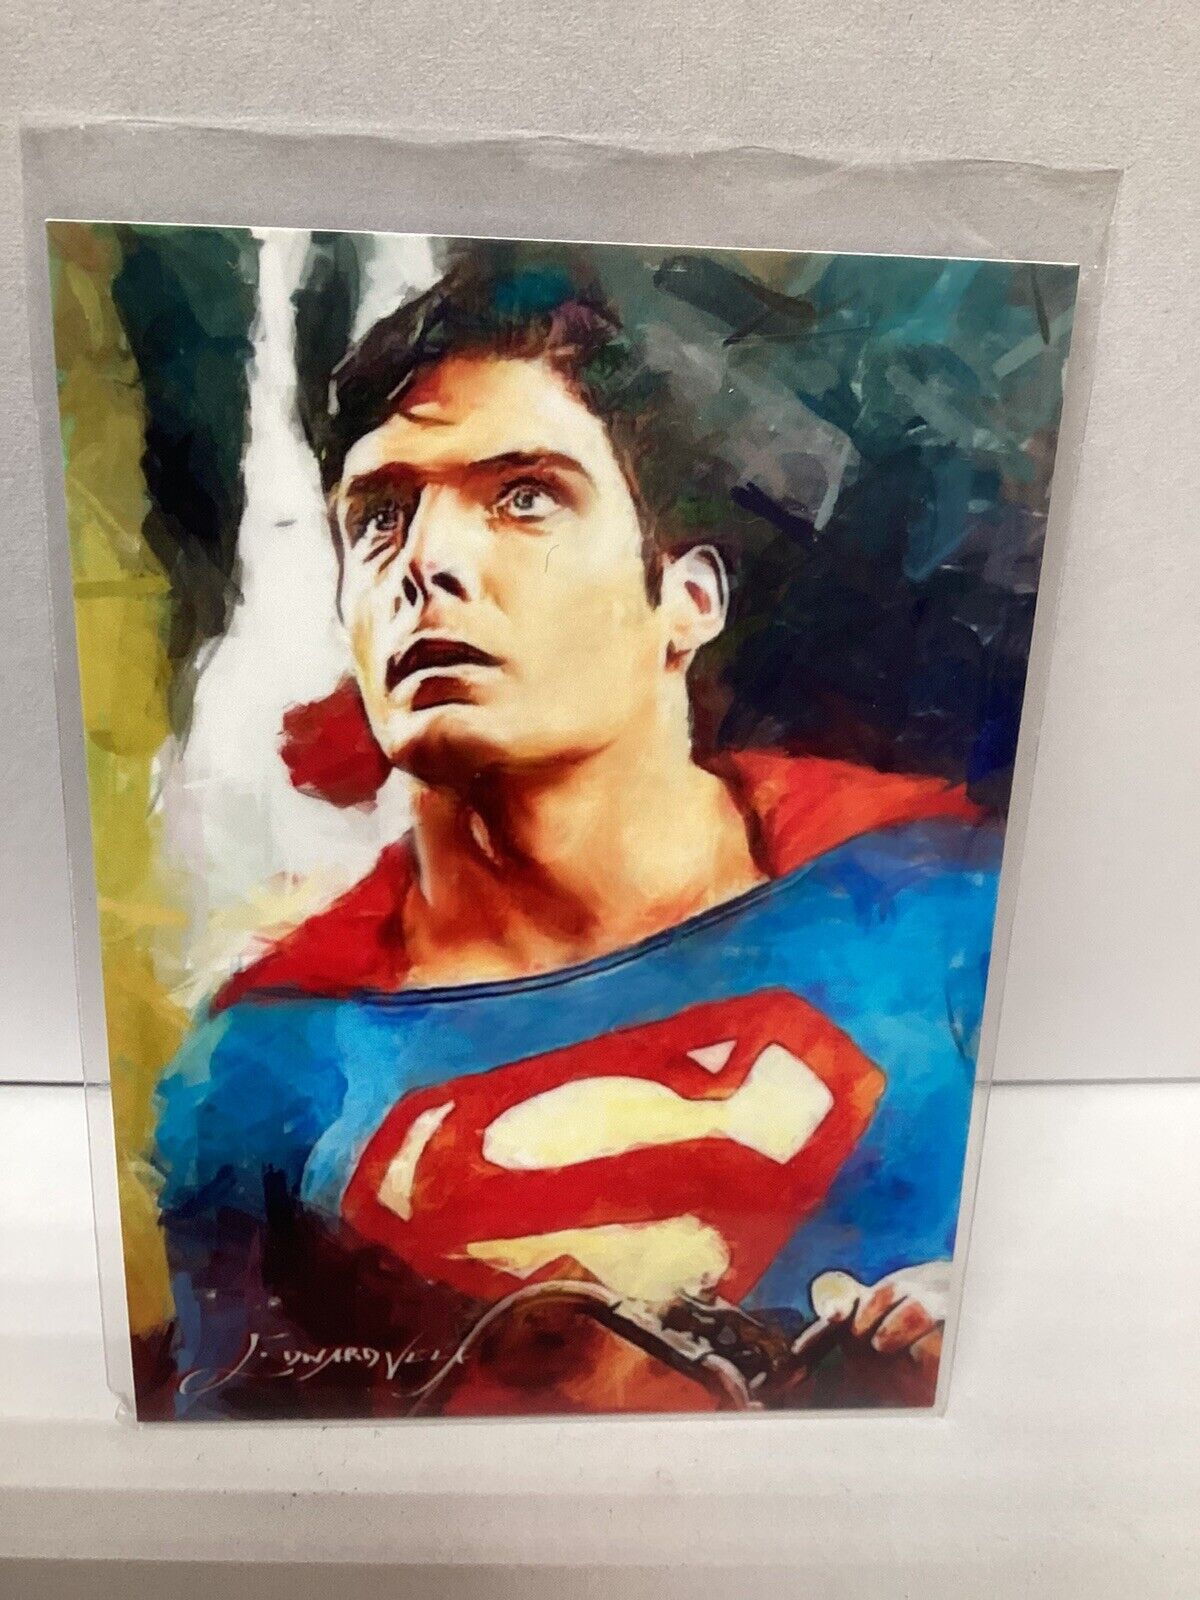 Superman/Christopher Reeves #26/50 #22 Sketch Edward Vela Signed 2018